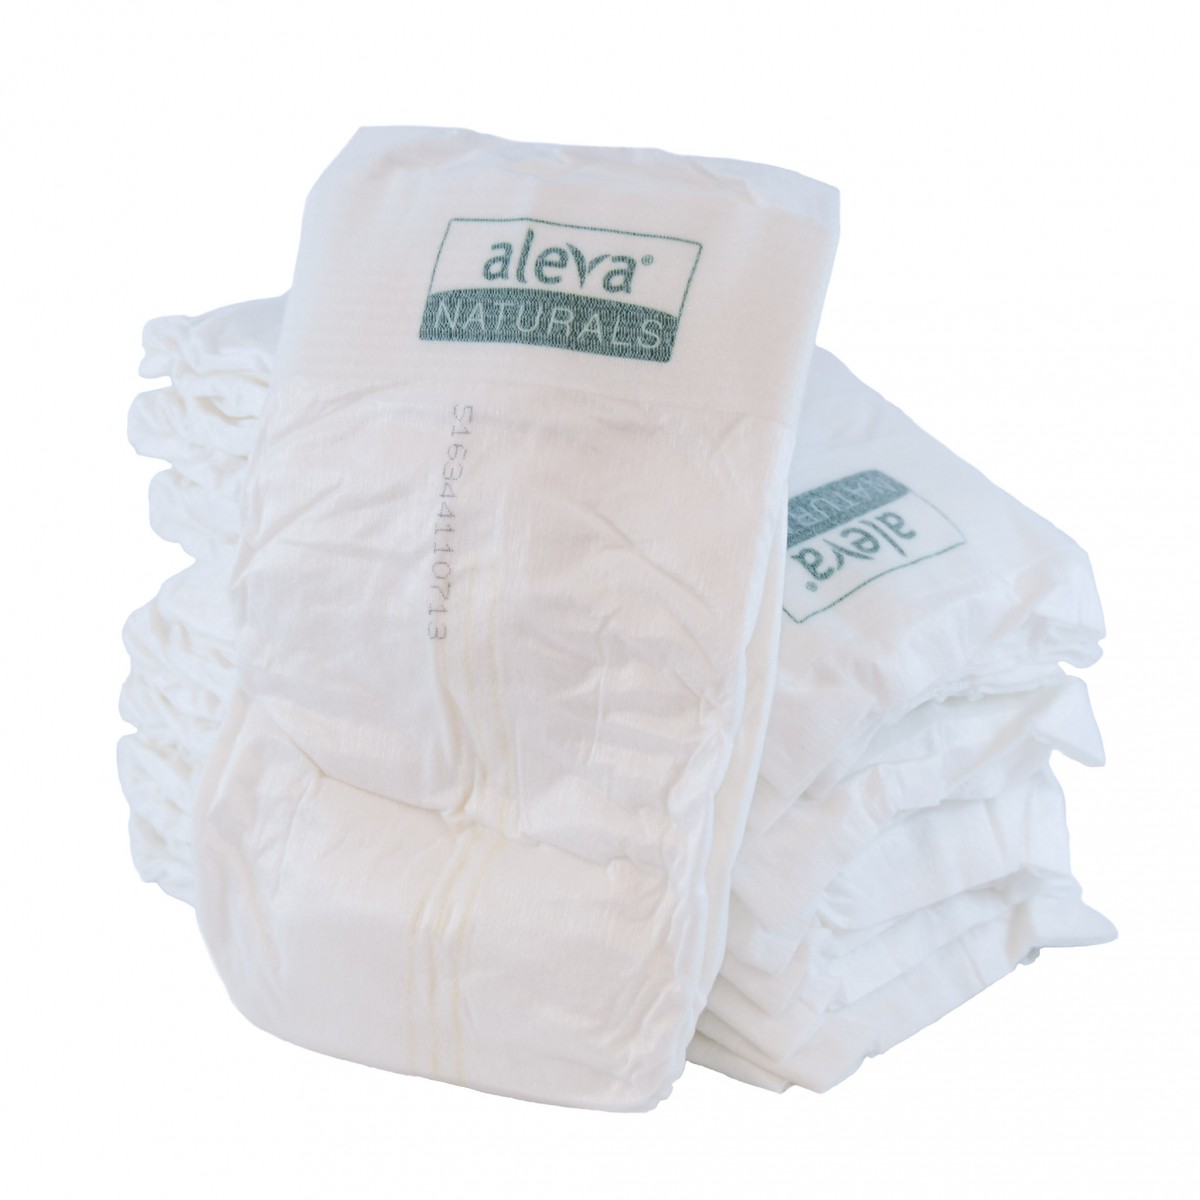 aleva naturals disposable diaper review